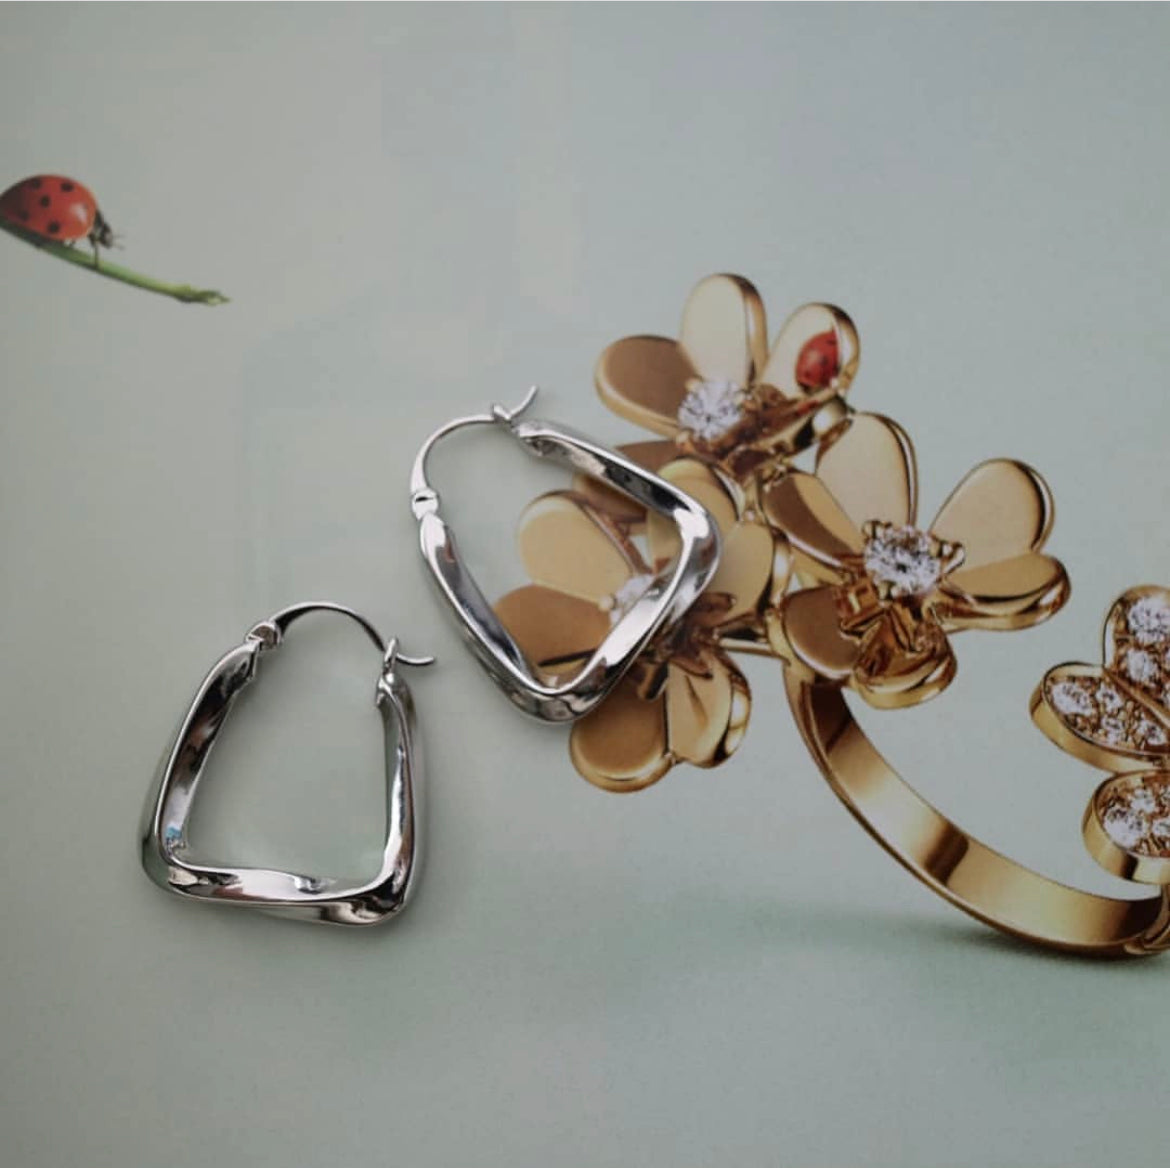 Baguette Earrings in Silver